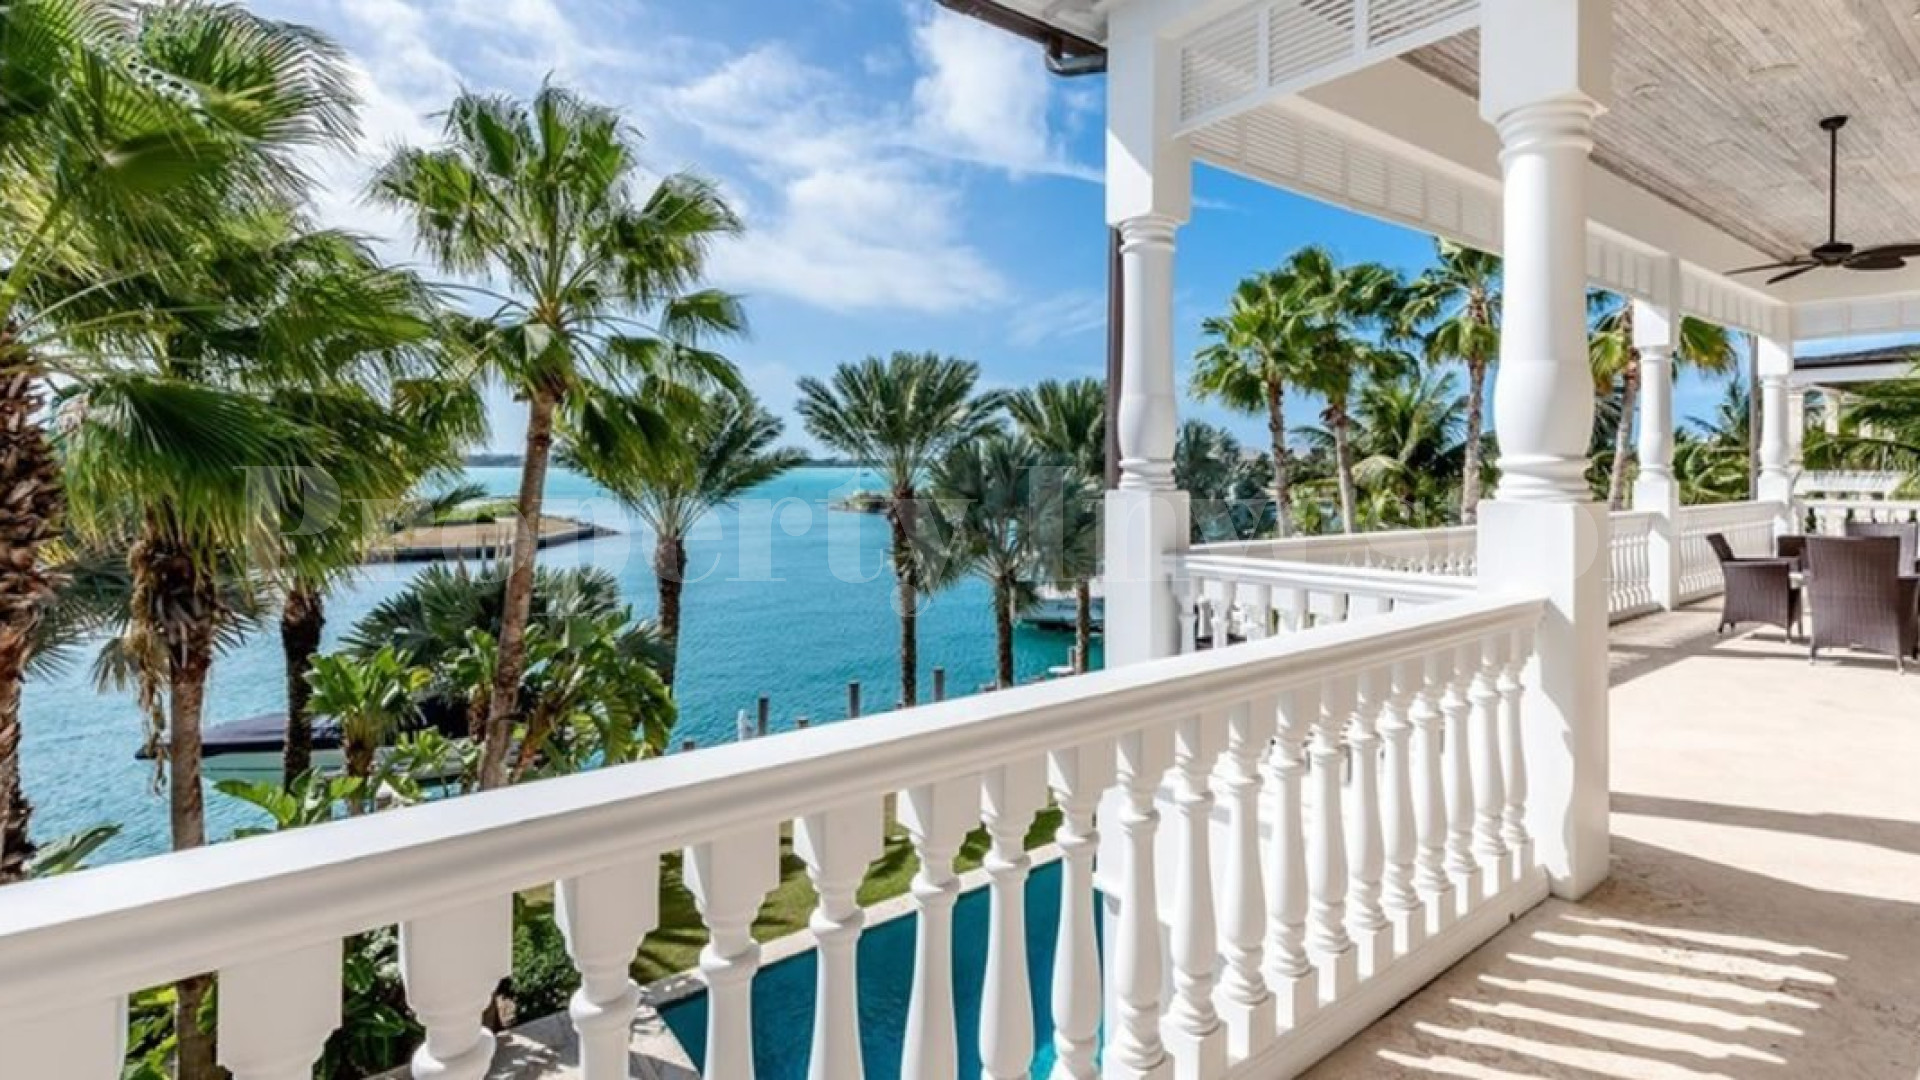 Впечатляющая роскошная вилла с 6 спальнями на берегу океана в престижном закрытом сообществе на острове Парадайз, Багамы